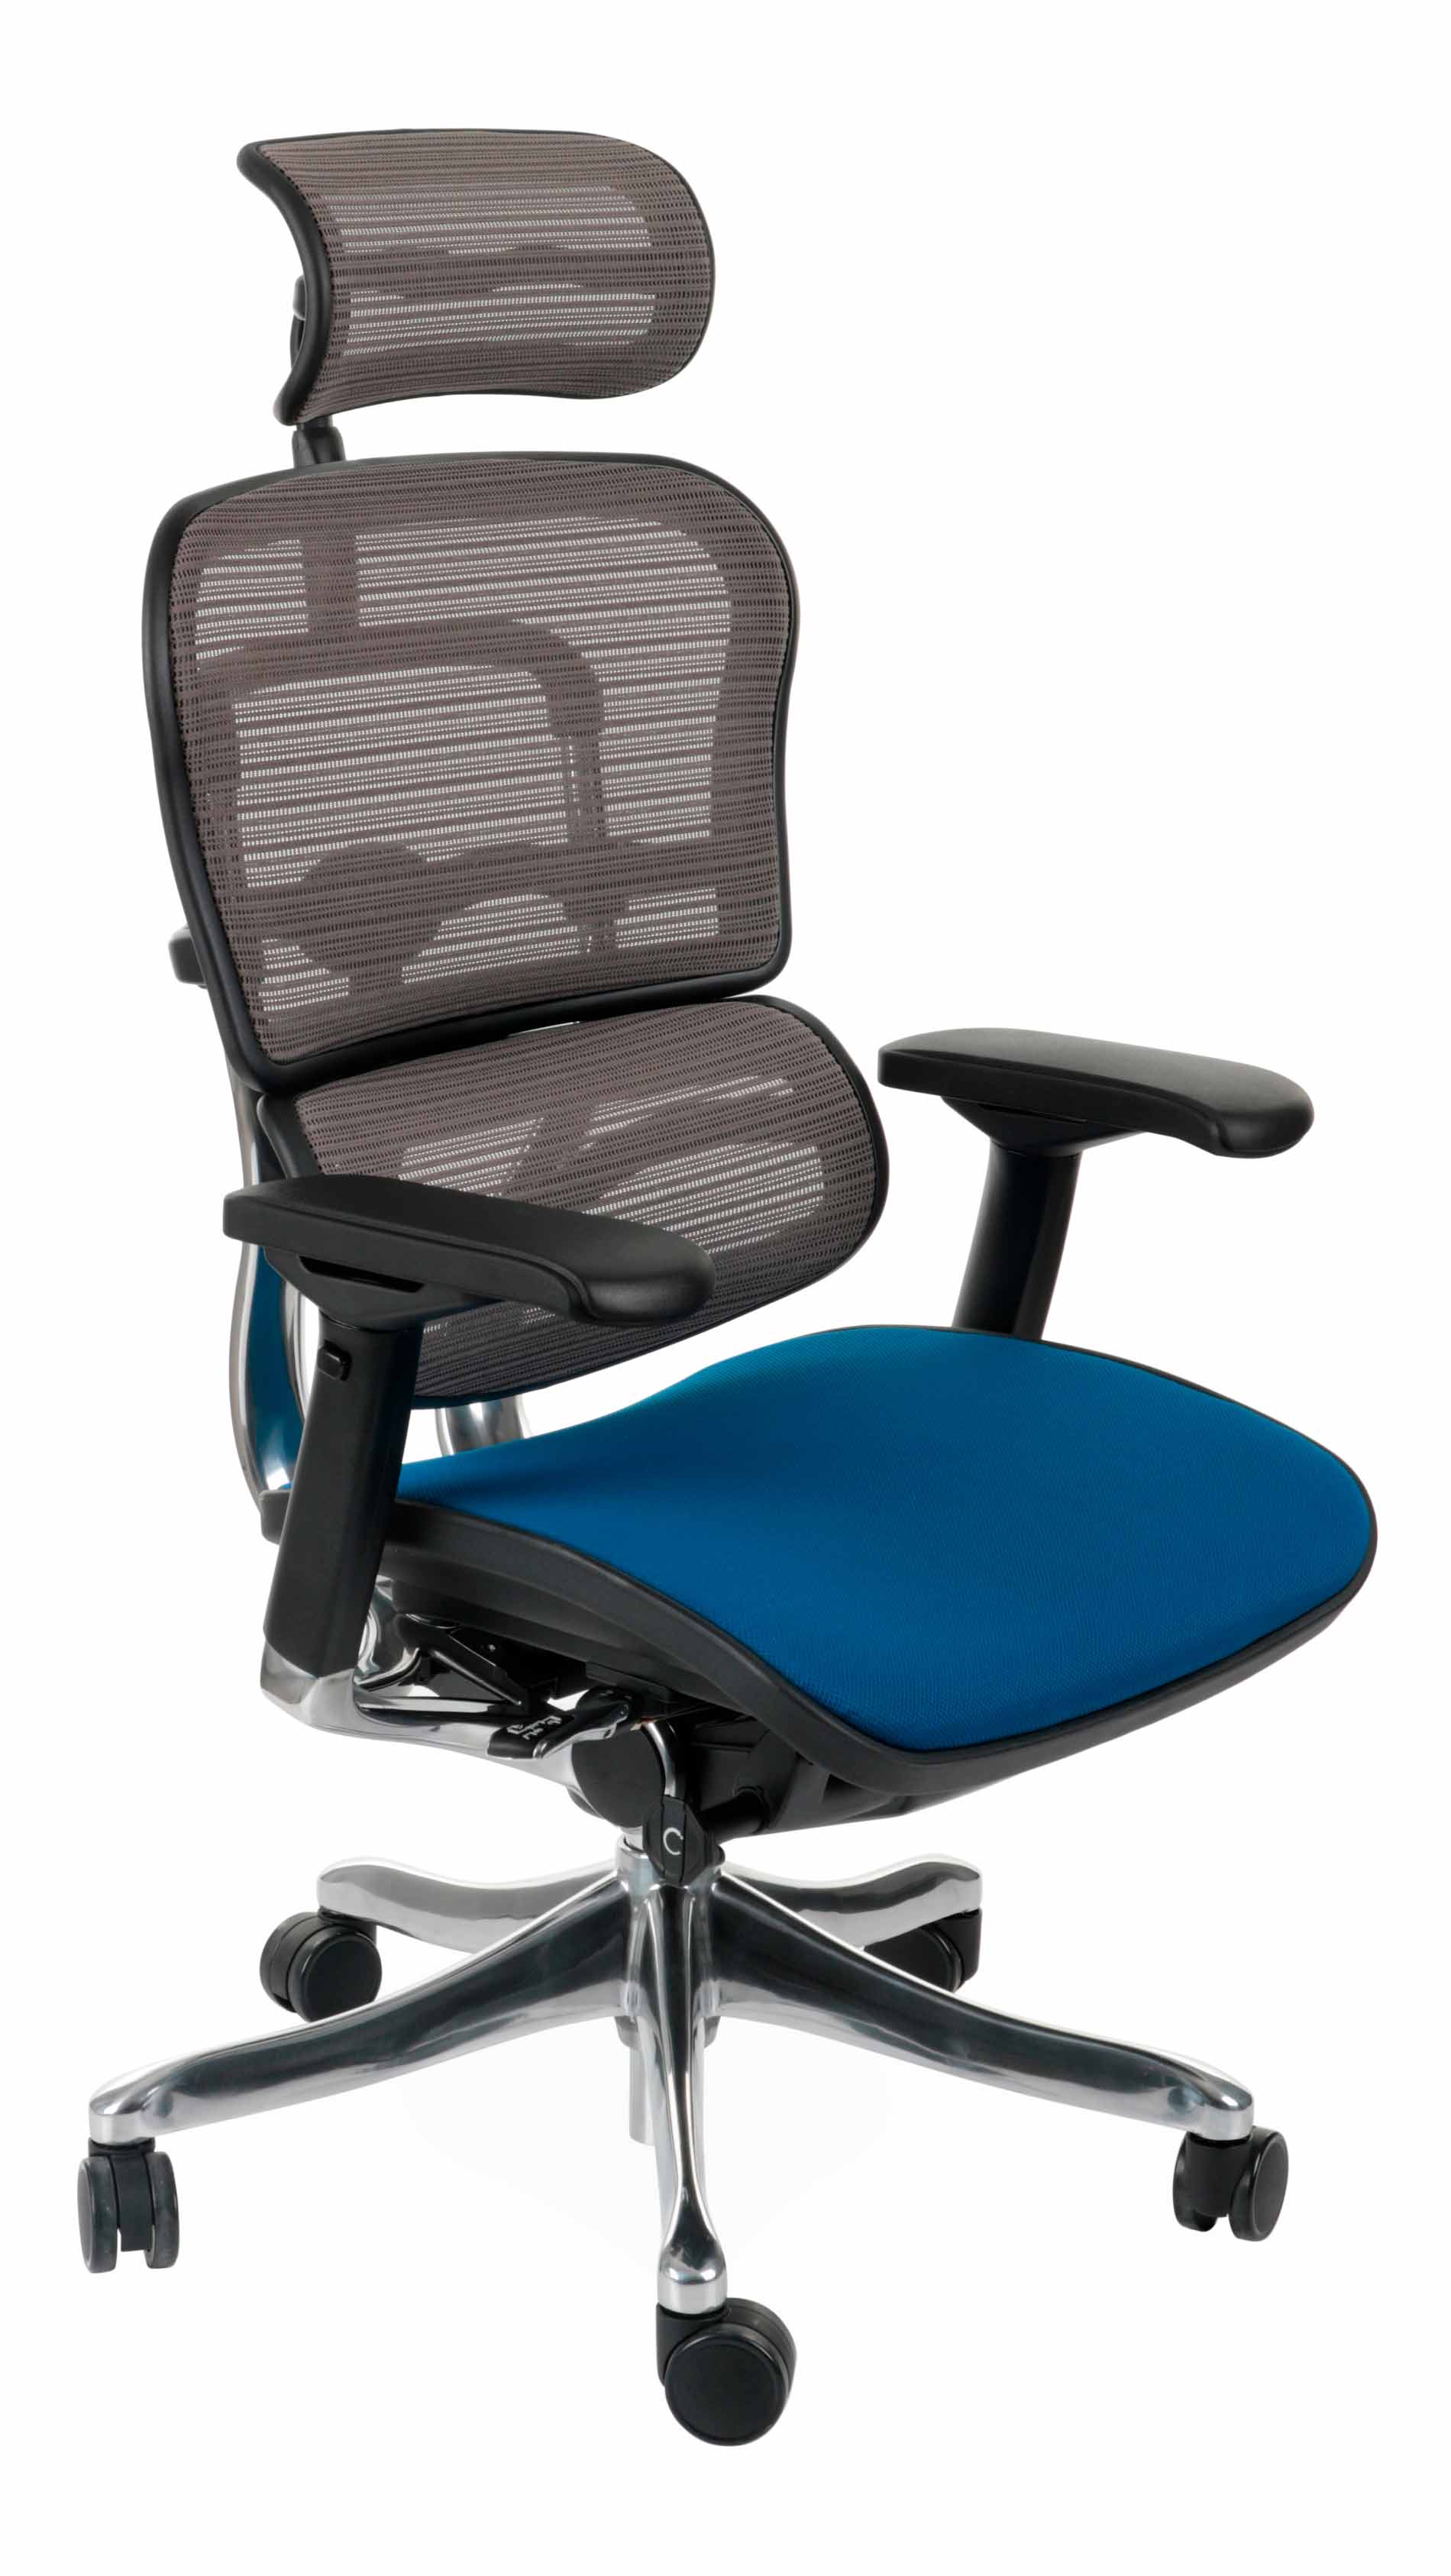 Ergohuman Plus Elite Color, Backrest: KMD 30, Seat: Flex FX03